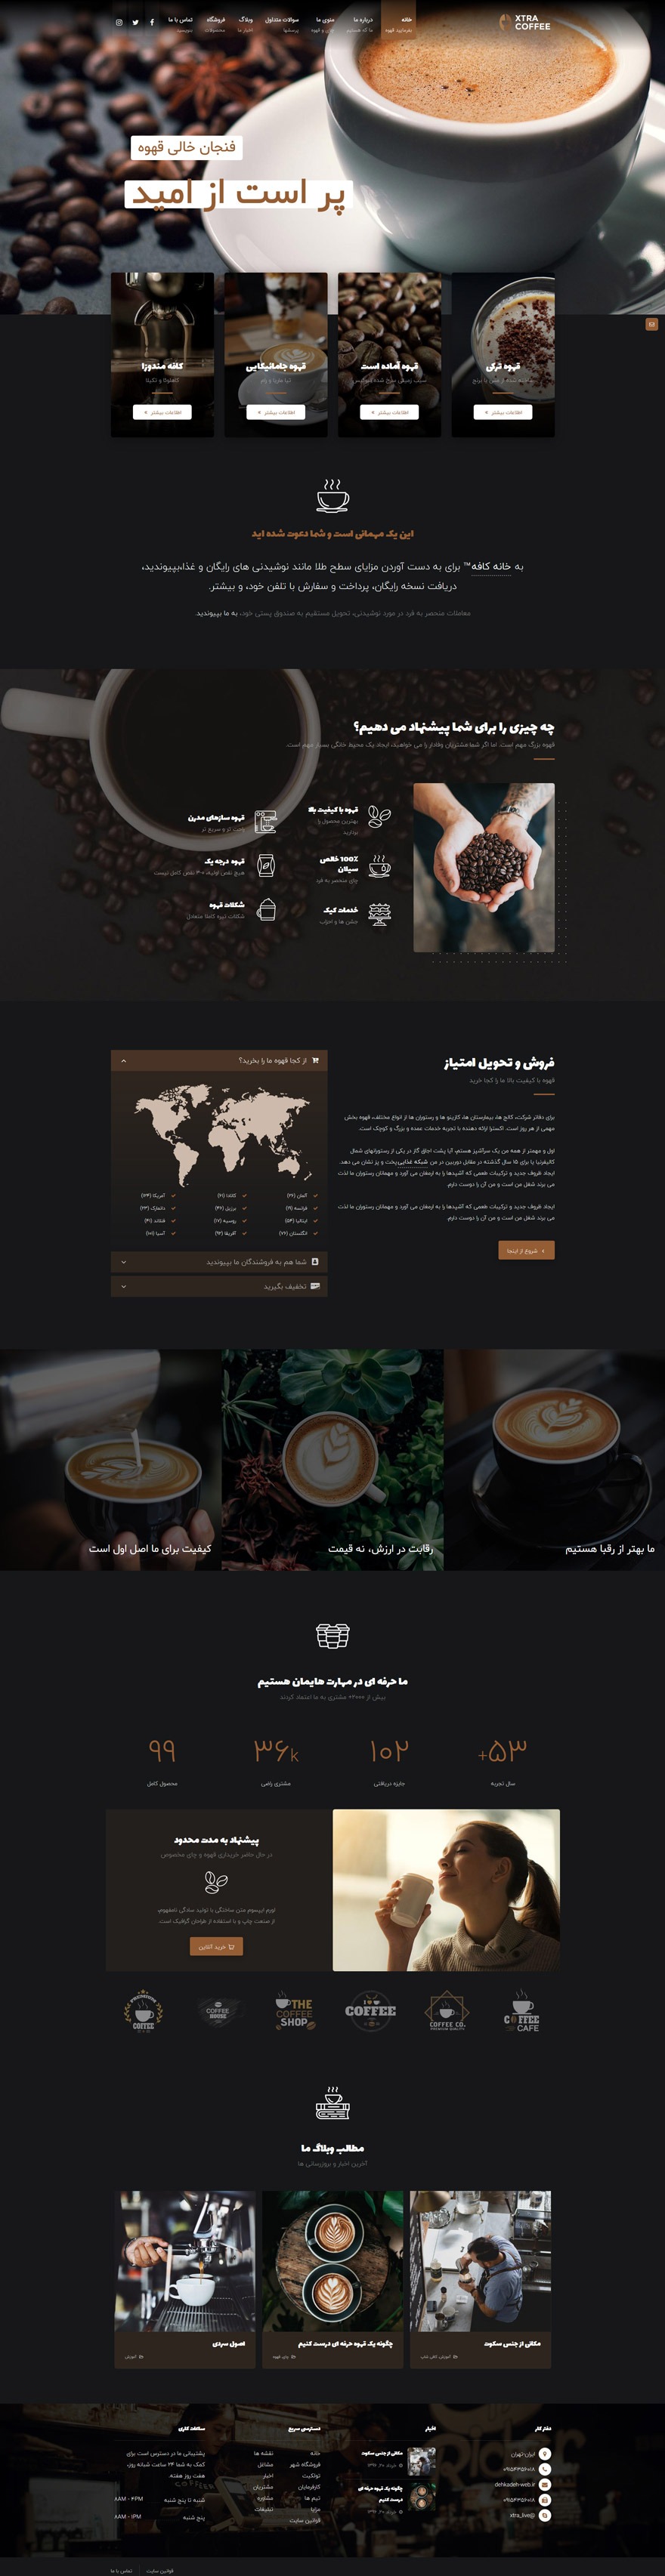 طراحی سایت فروشگاه چای و قهوه